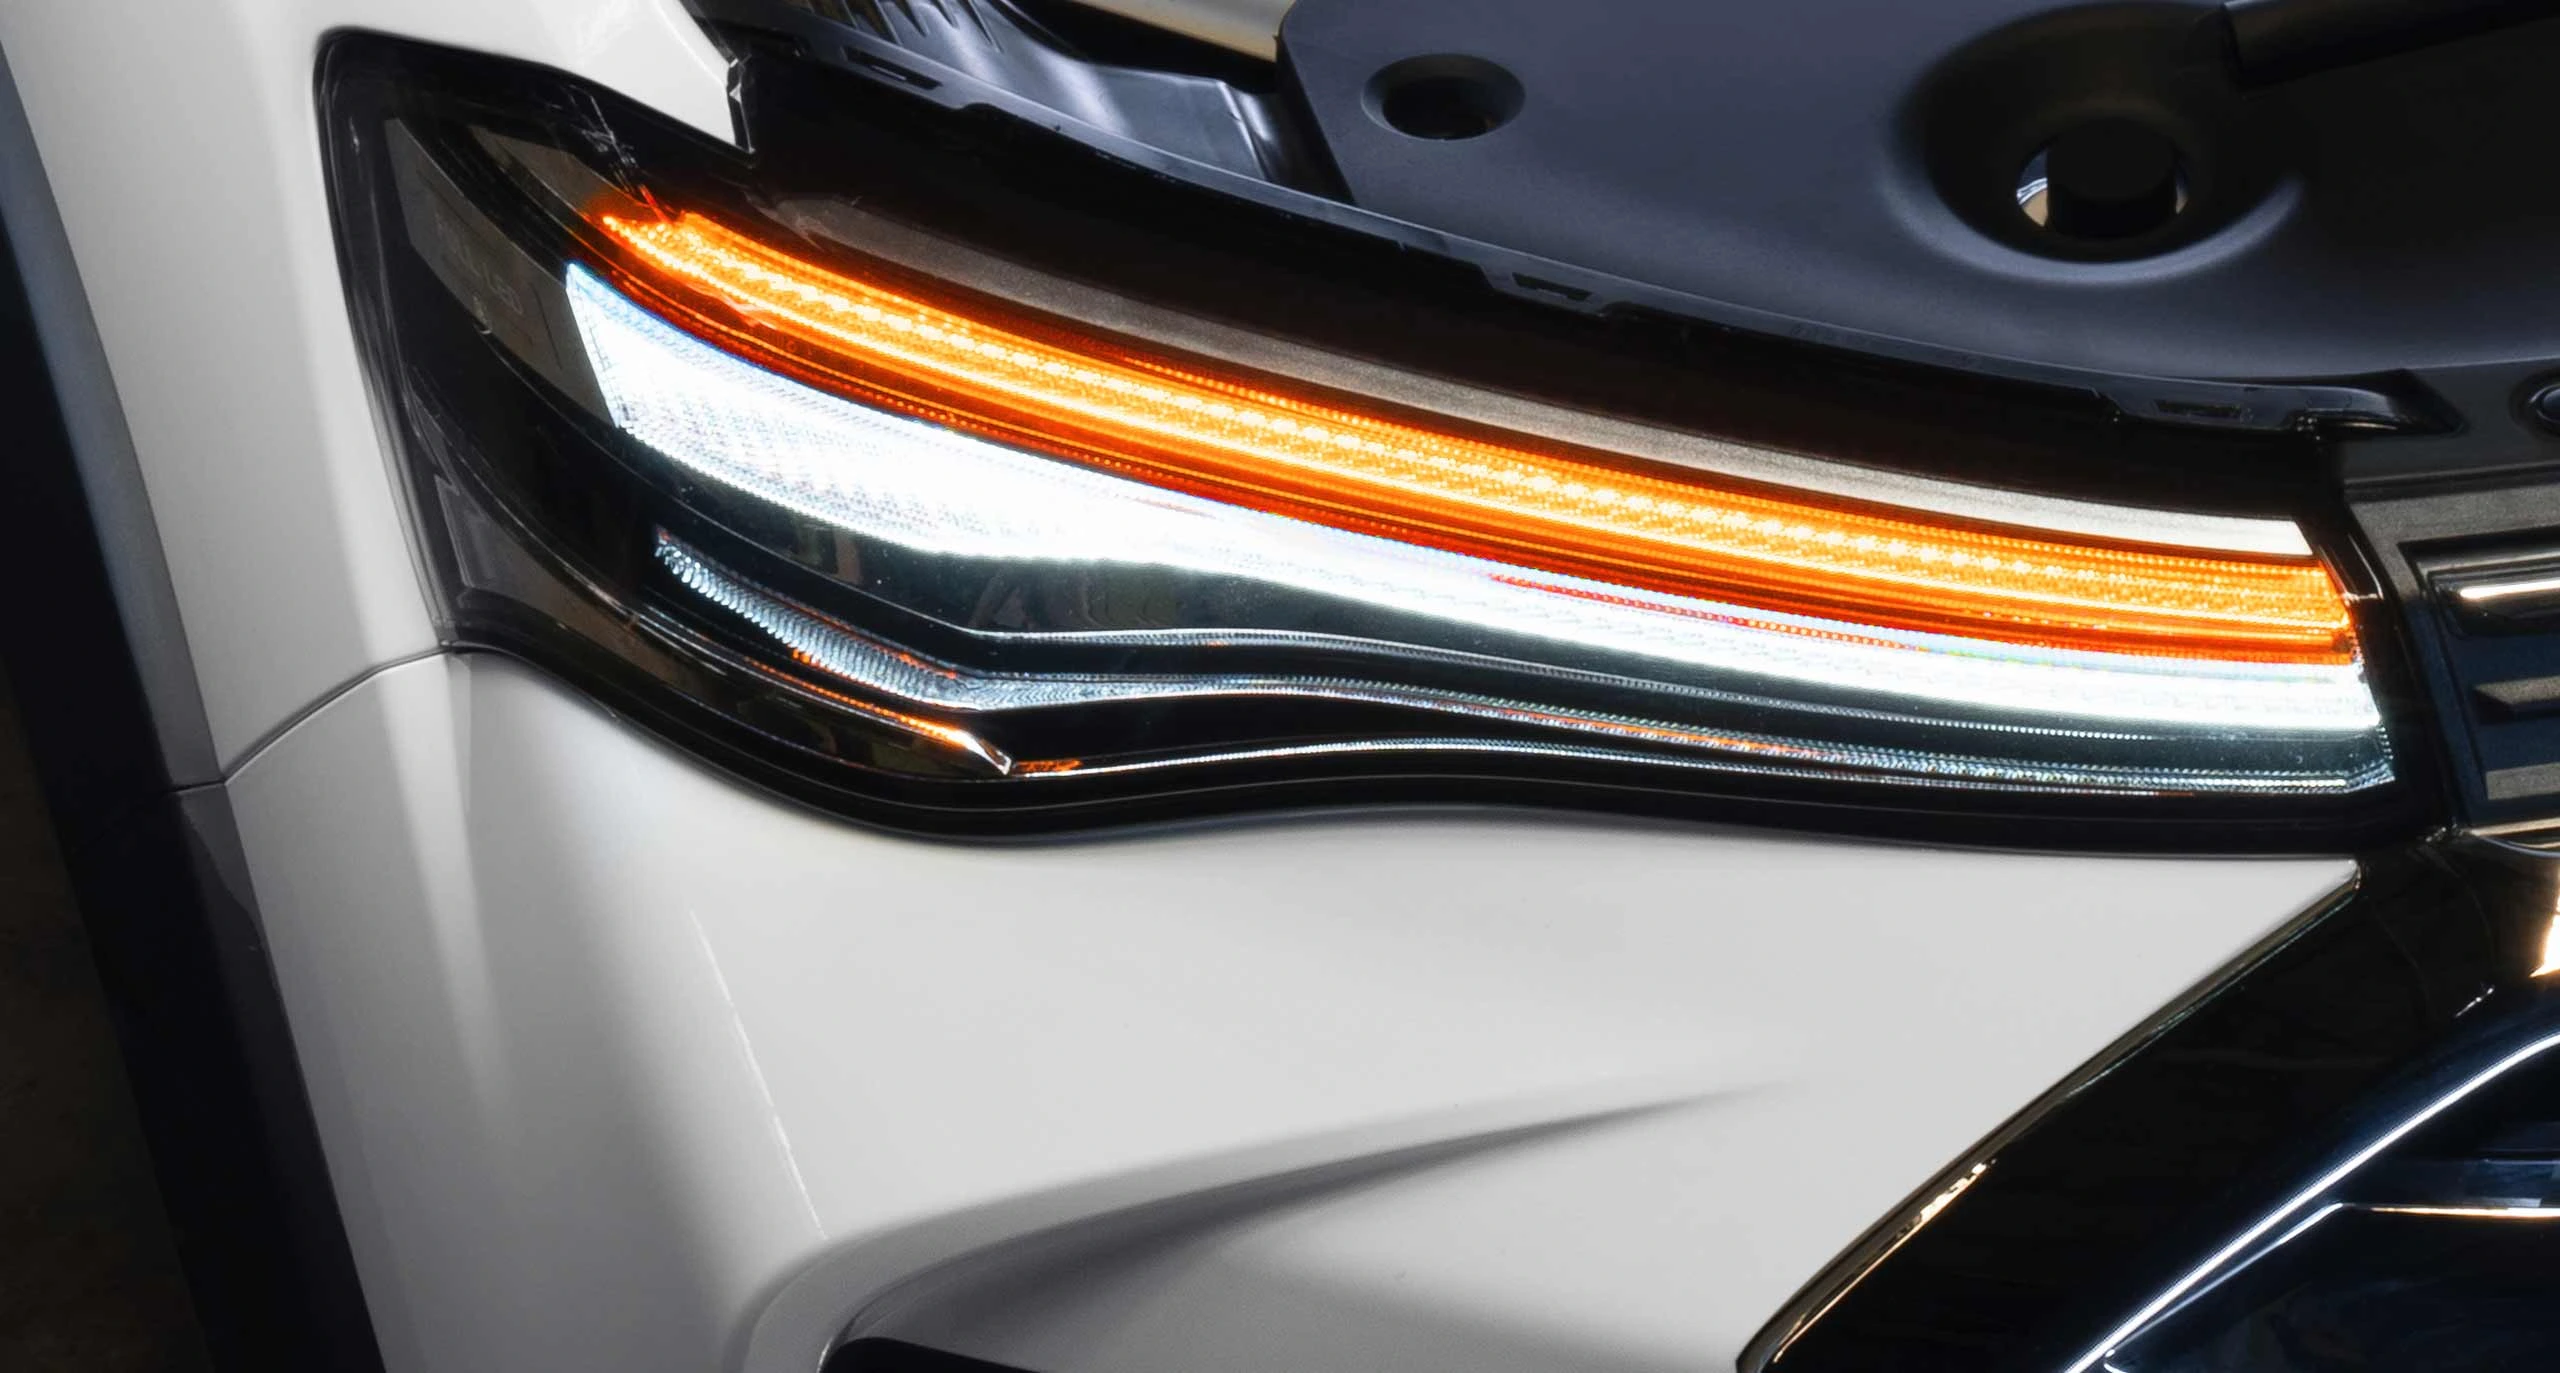 Los ojos afilados de la pick up Maxus T90 hacen que la cabeza del automóvil se vea más deportiva con un color de luz puro.